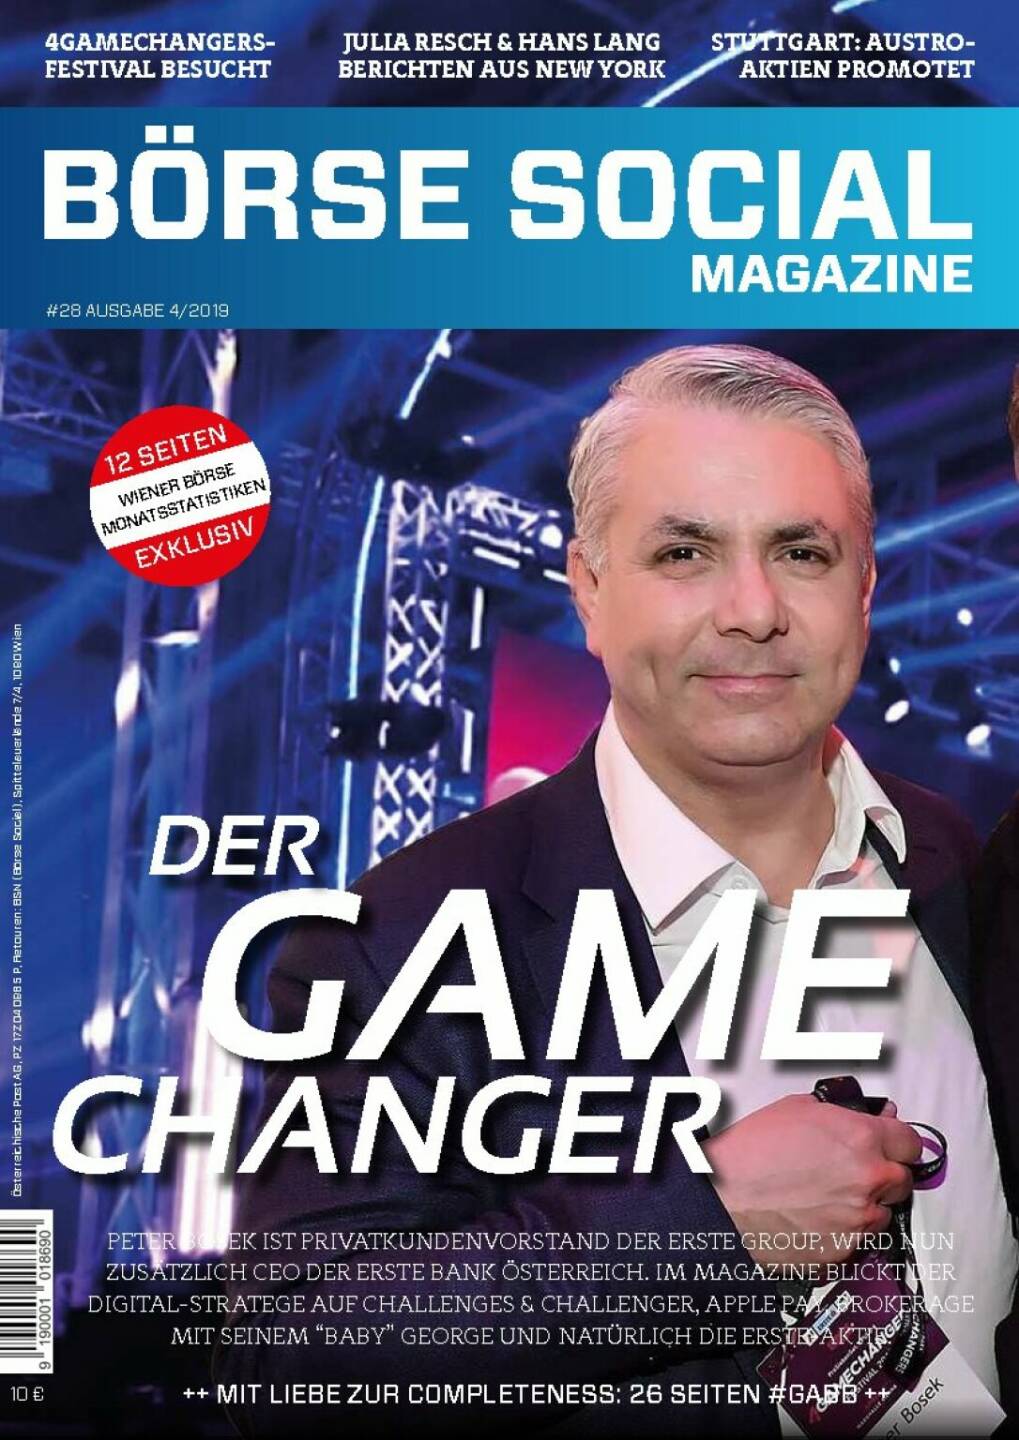 Magazine #28 - April 2019: Zum 2. Mal beim Game Changers Festival, diesmal mit Peter Bosek, Erste Group, auf dem Cover; der George-Erfinder ist nicht nur 4GC-Hauptsponsor, sondern auch der vielleicht disruptivste Banker des Landes